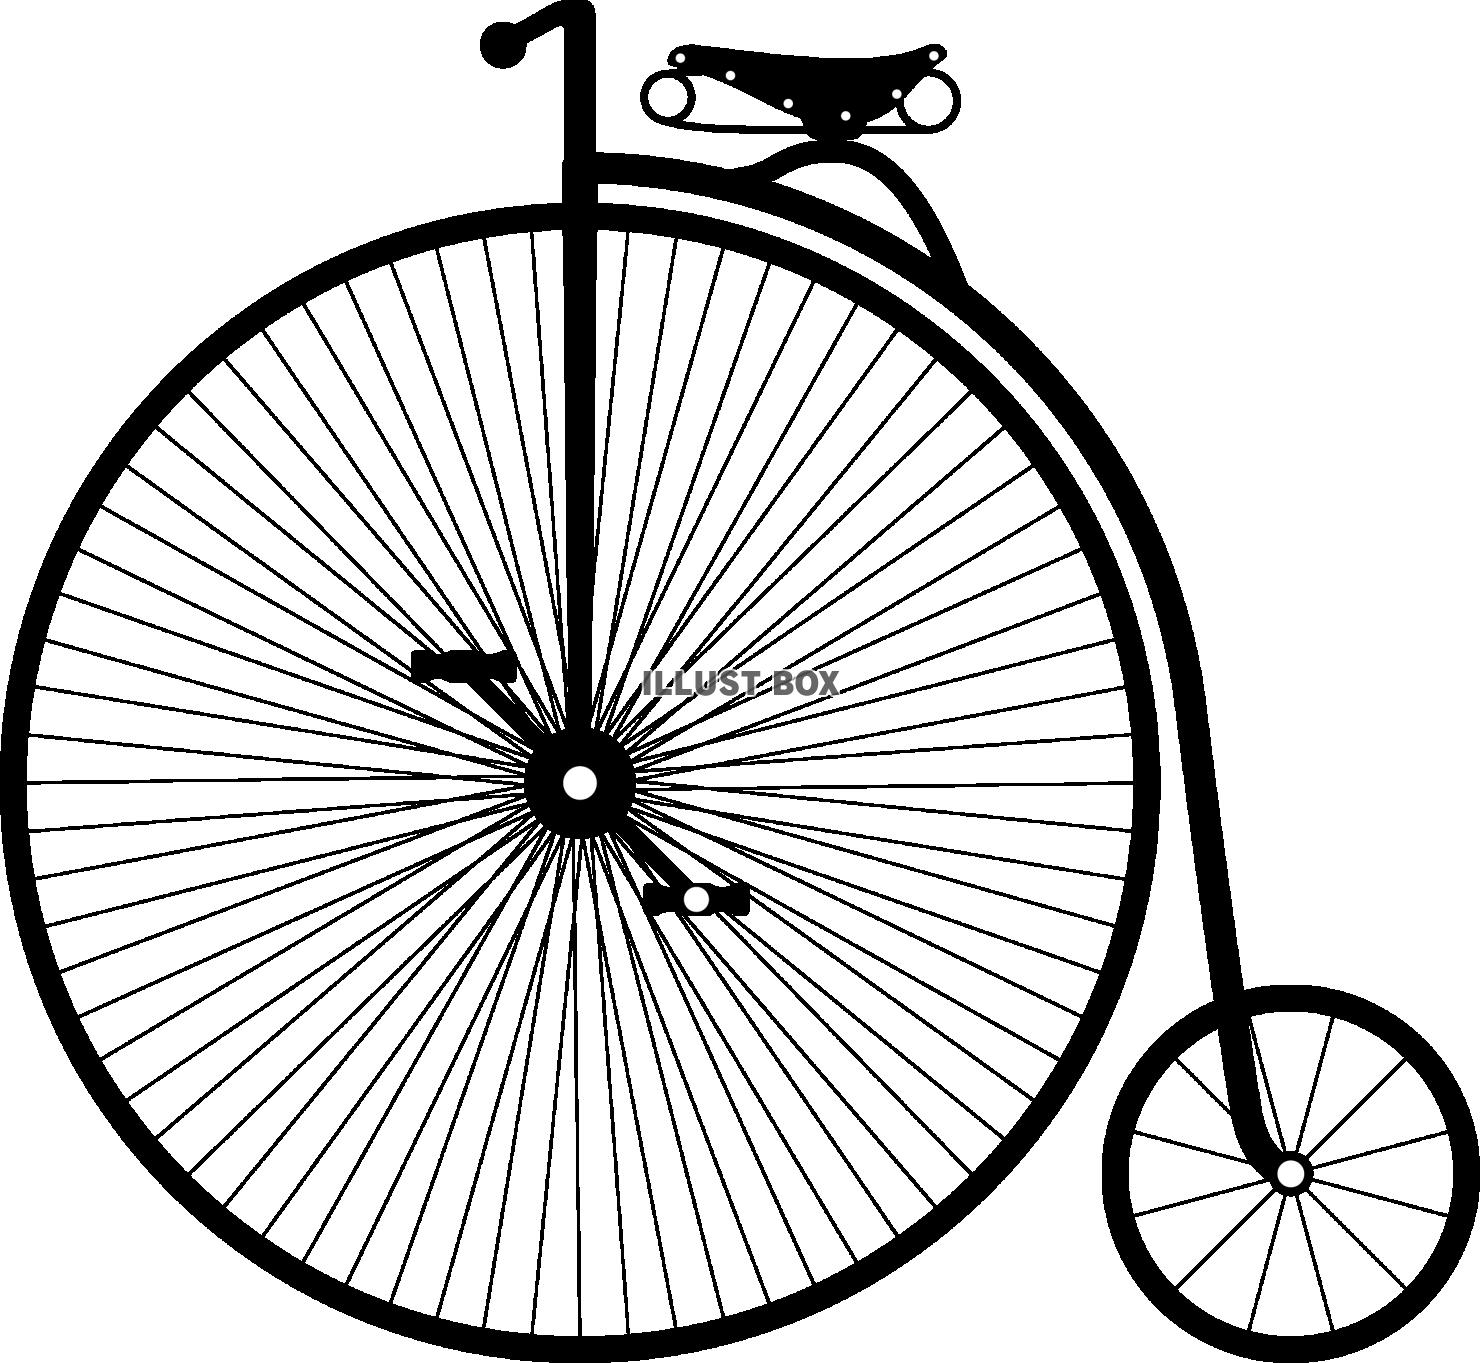 シルエット 素材 自転車 イラスト無料